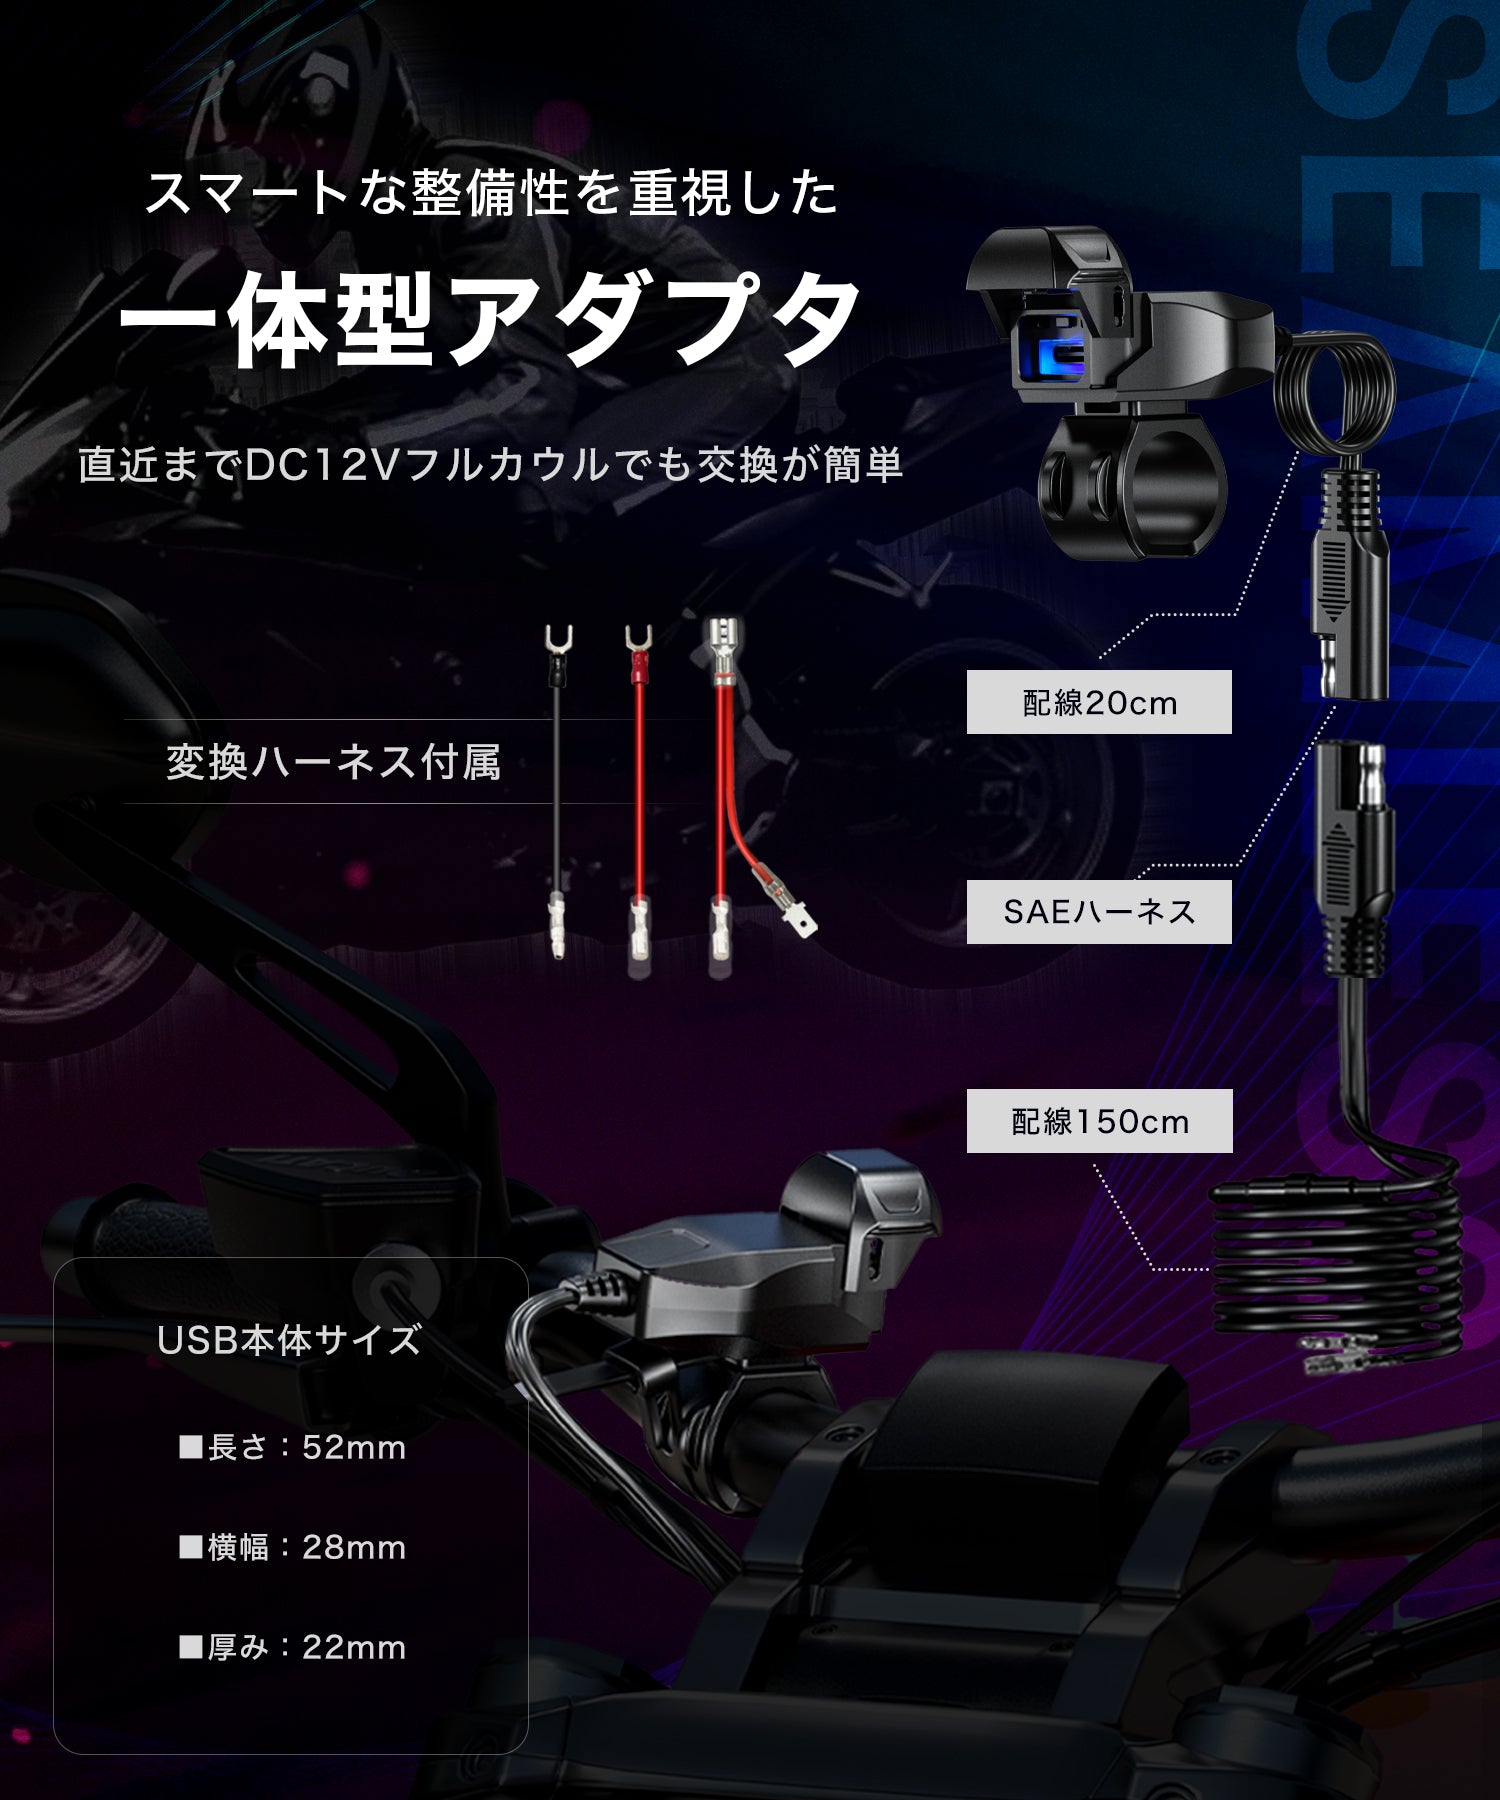 MOTO USBチャージャー KDR-M3C